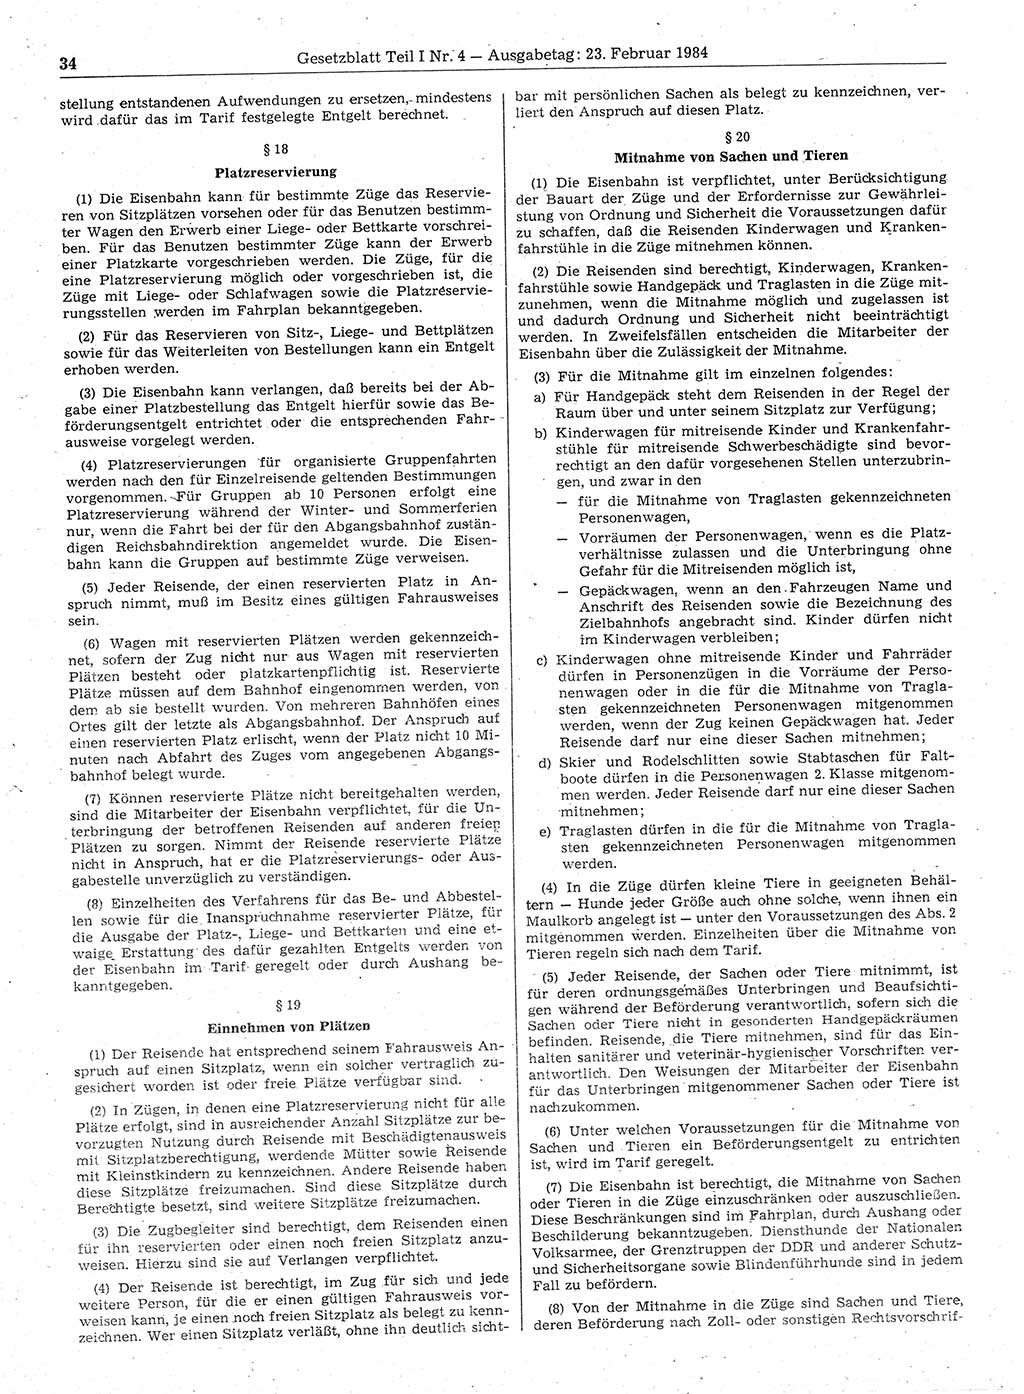 Gesetzblatt (GBl.) der Deutschen Demokratischen Republik (DDR) Teil Ⅰ 1984, Seite 34 (GBl. DDR Ⅰ 1984, S. 34)